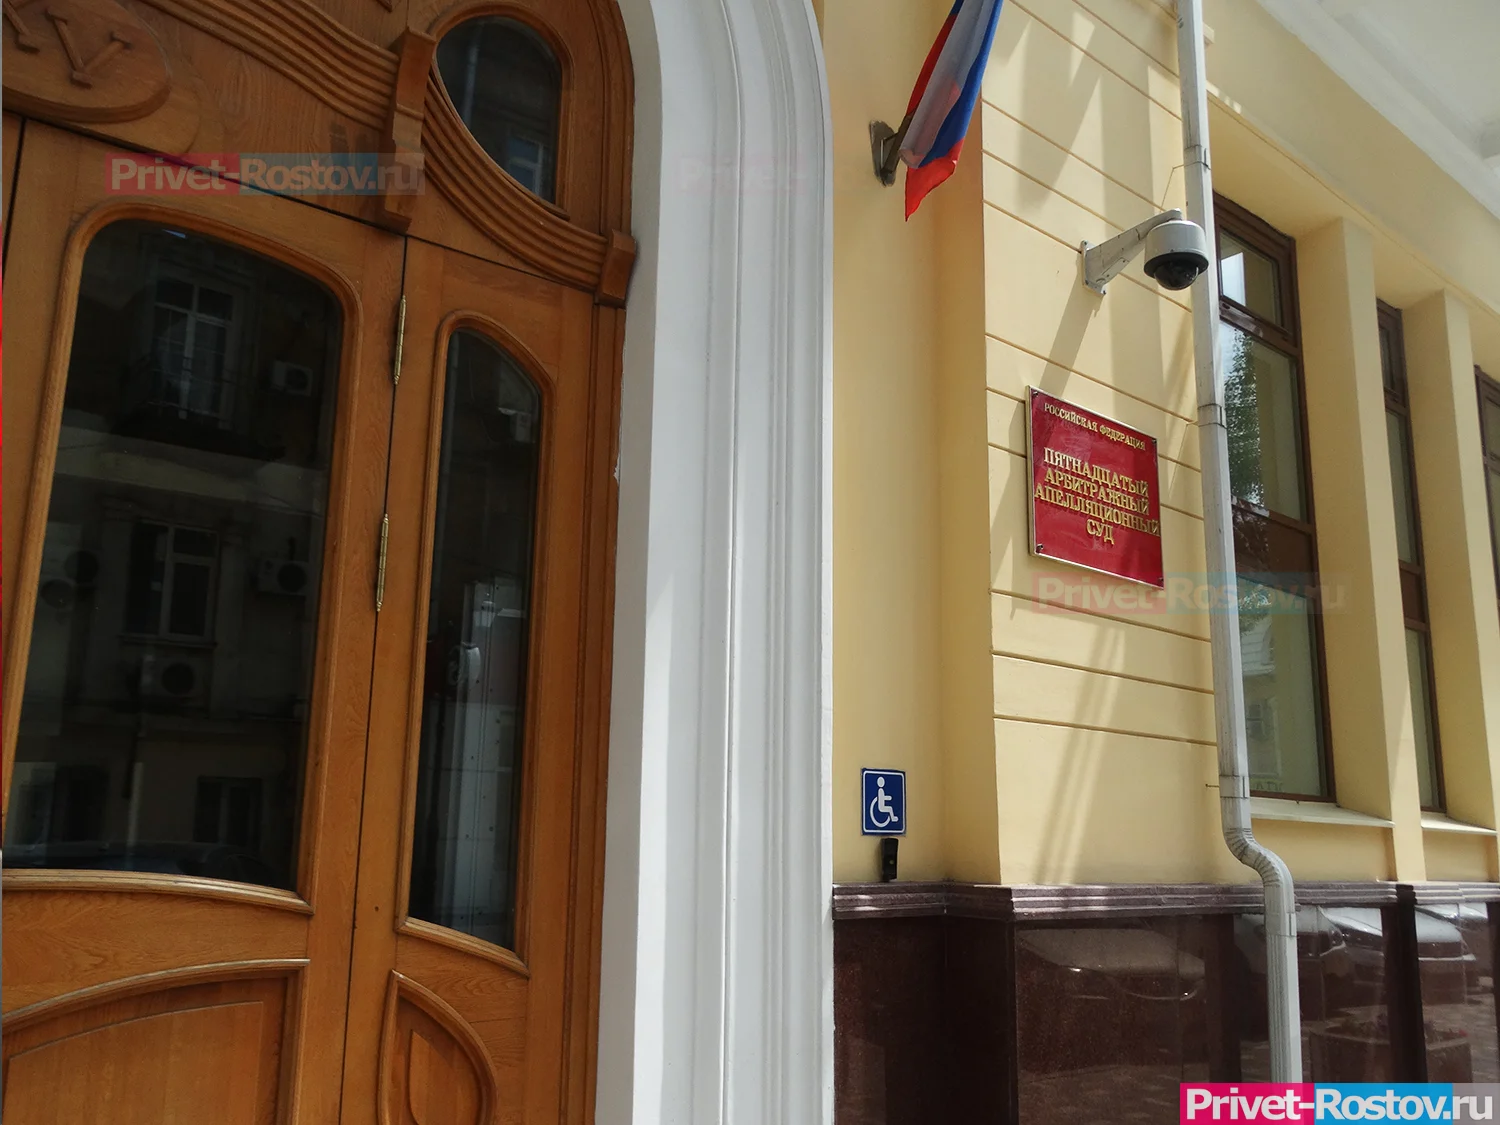 Личность не раскрыли: в ростовском суде по делу аксайских рынков допросили «засекреченного свидетеля»